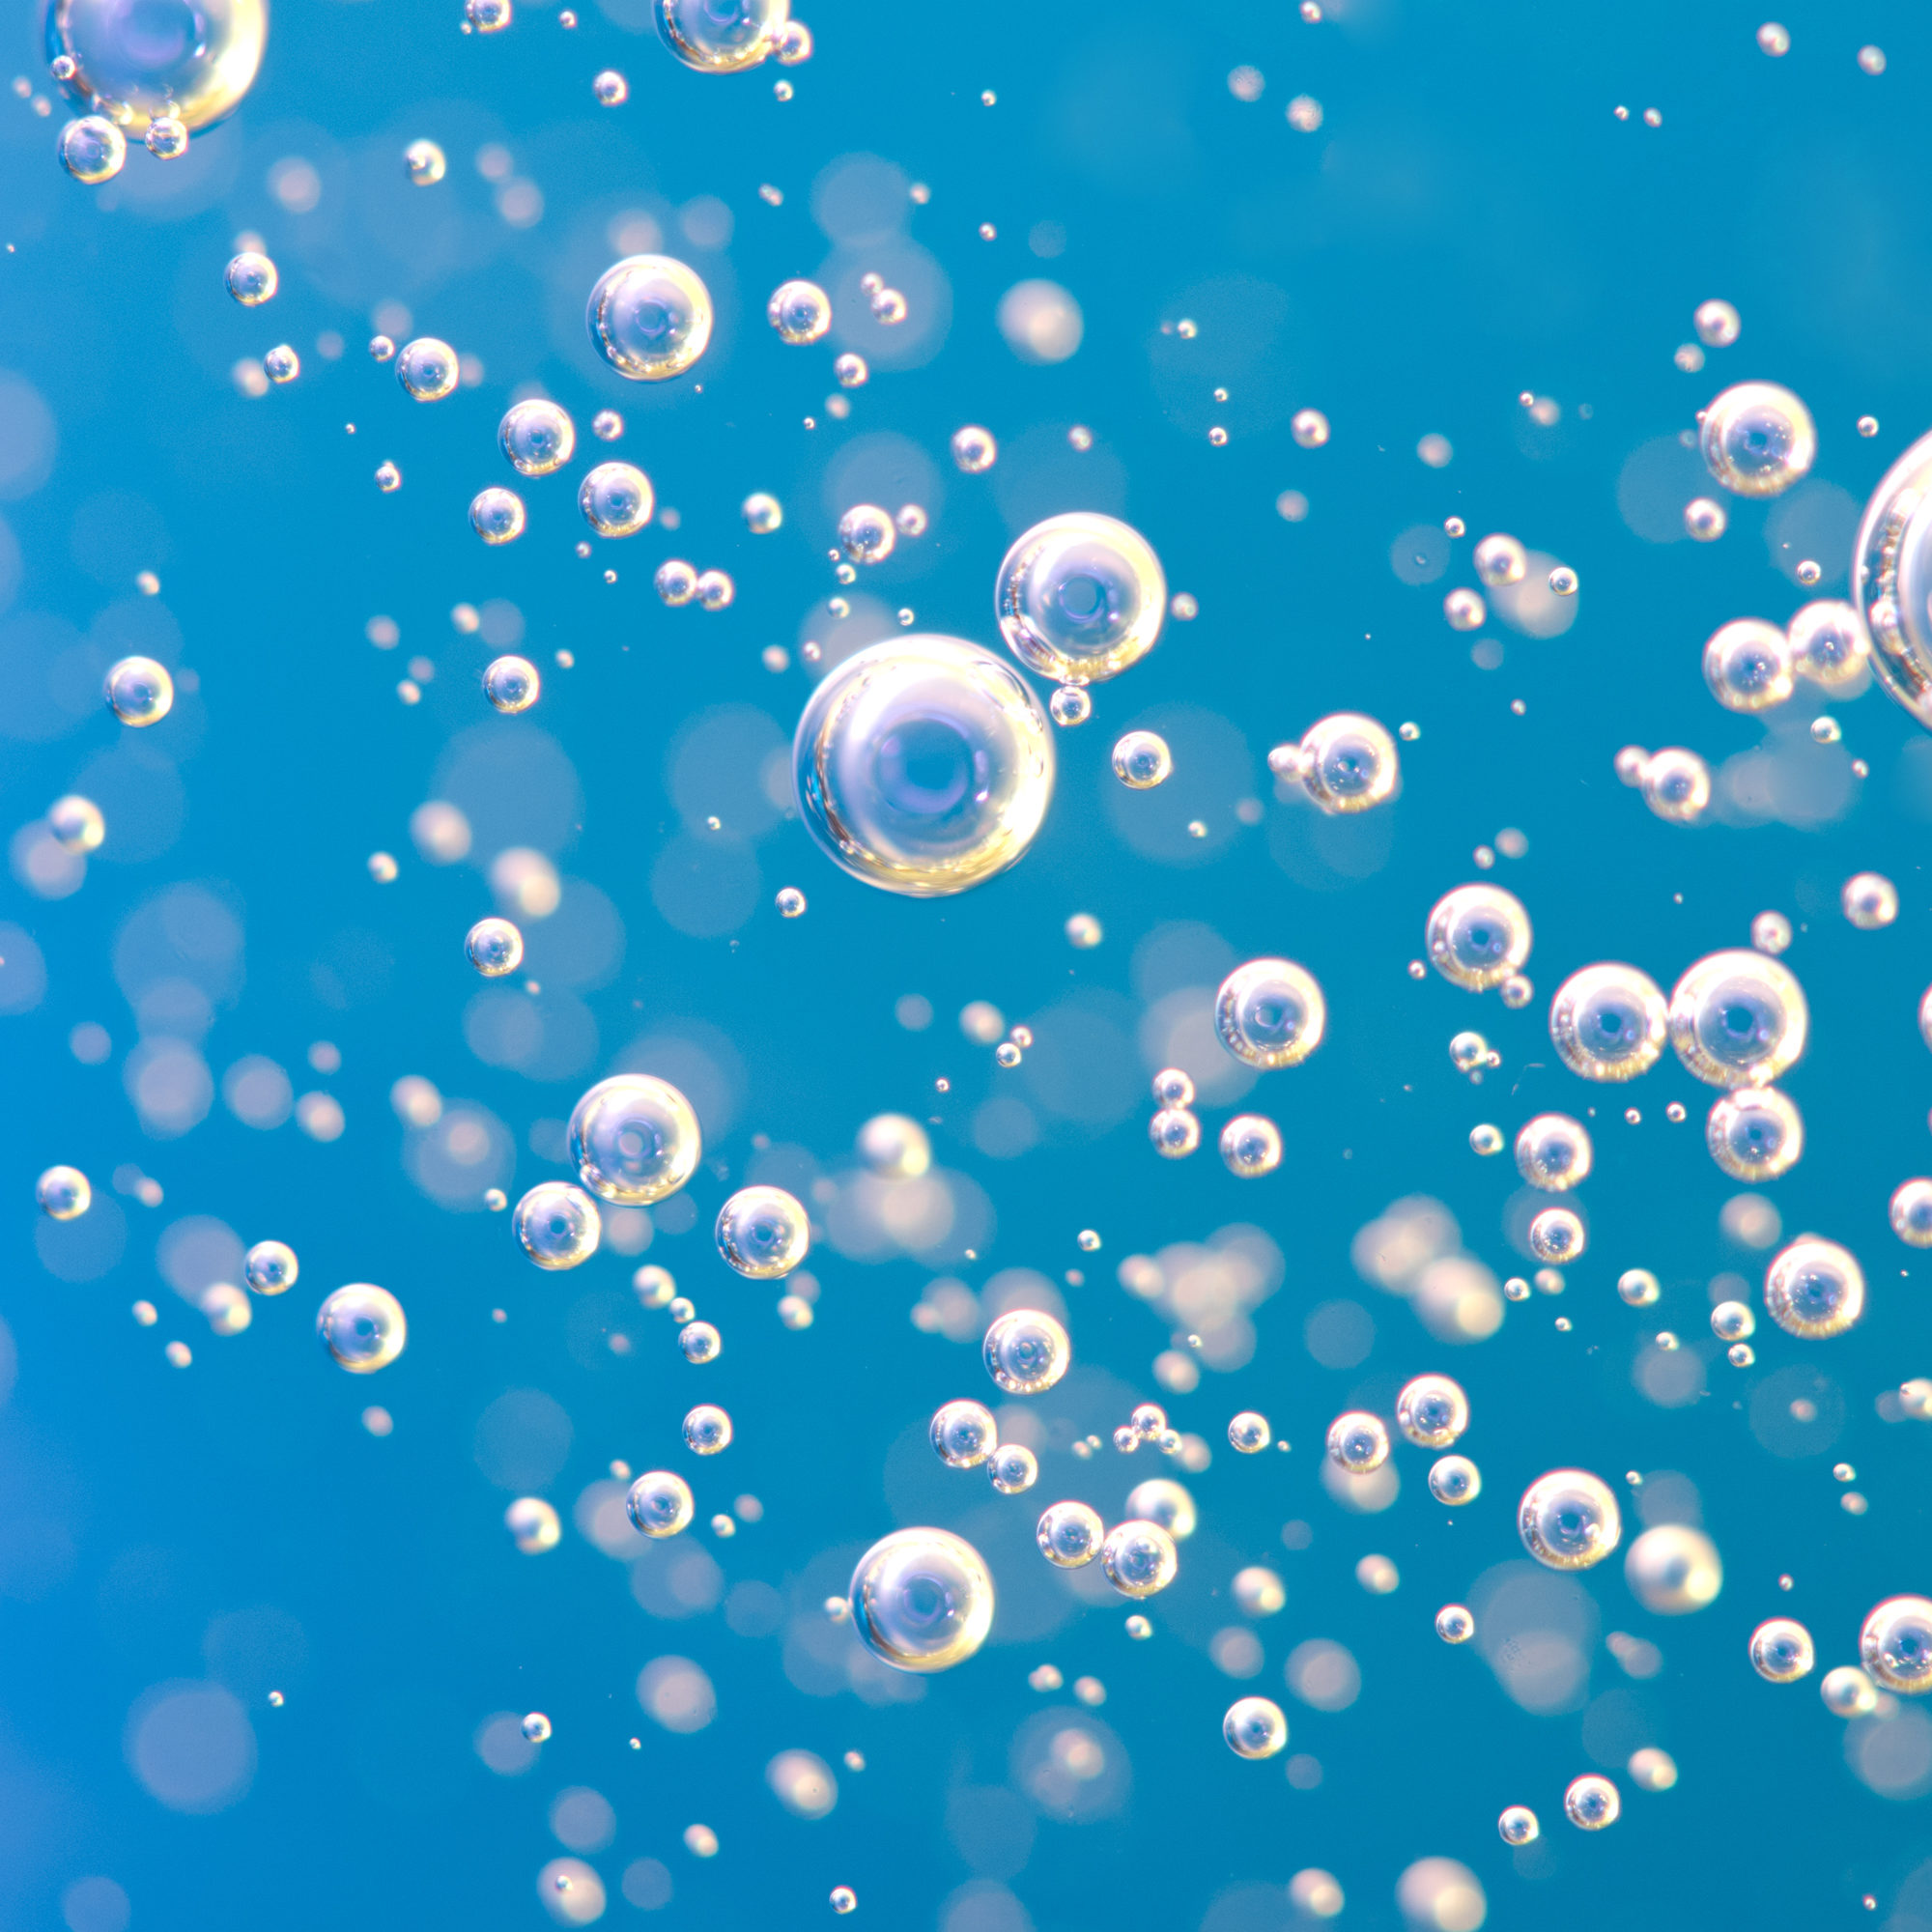 oxygen-bubbles